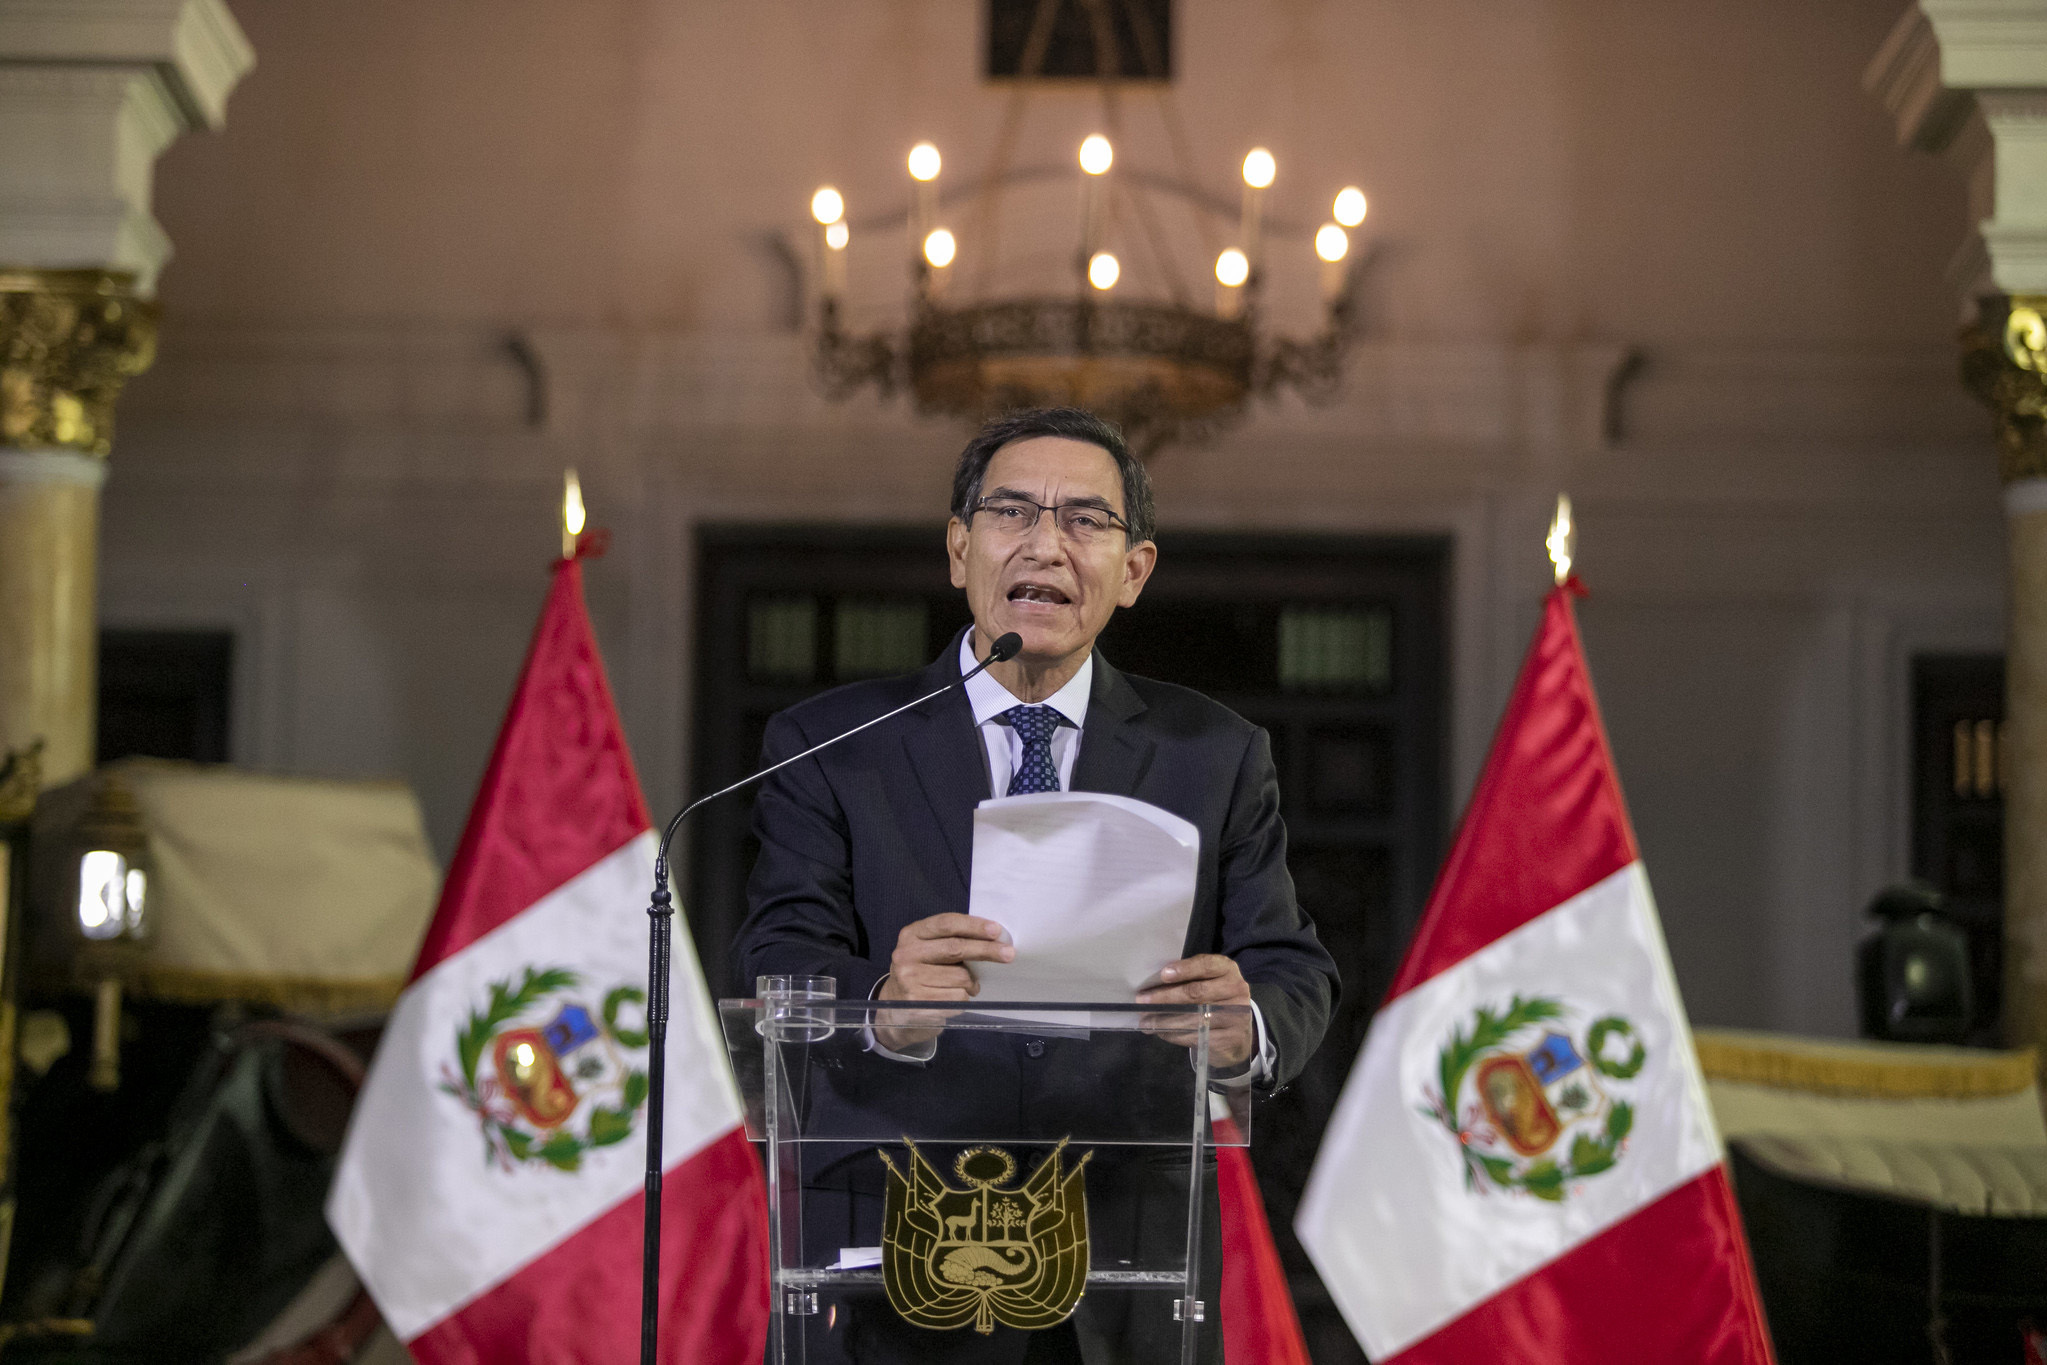 Crise política no Peru serve de alerta sobre importância de apoio